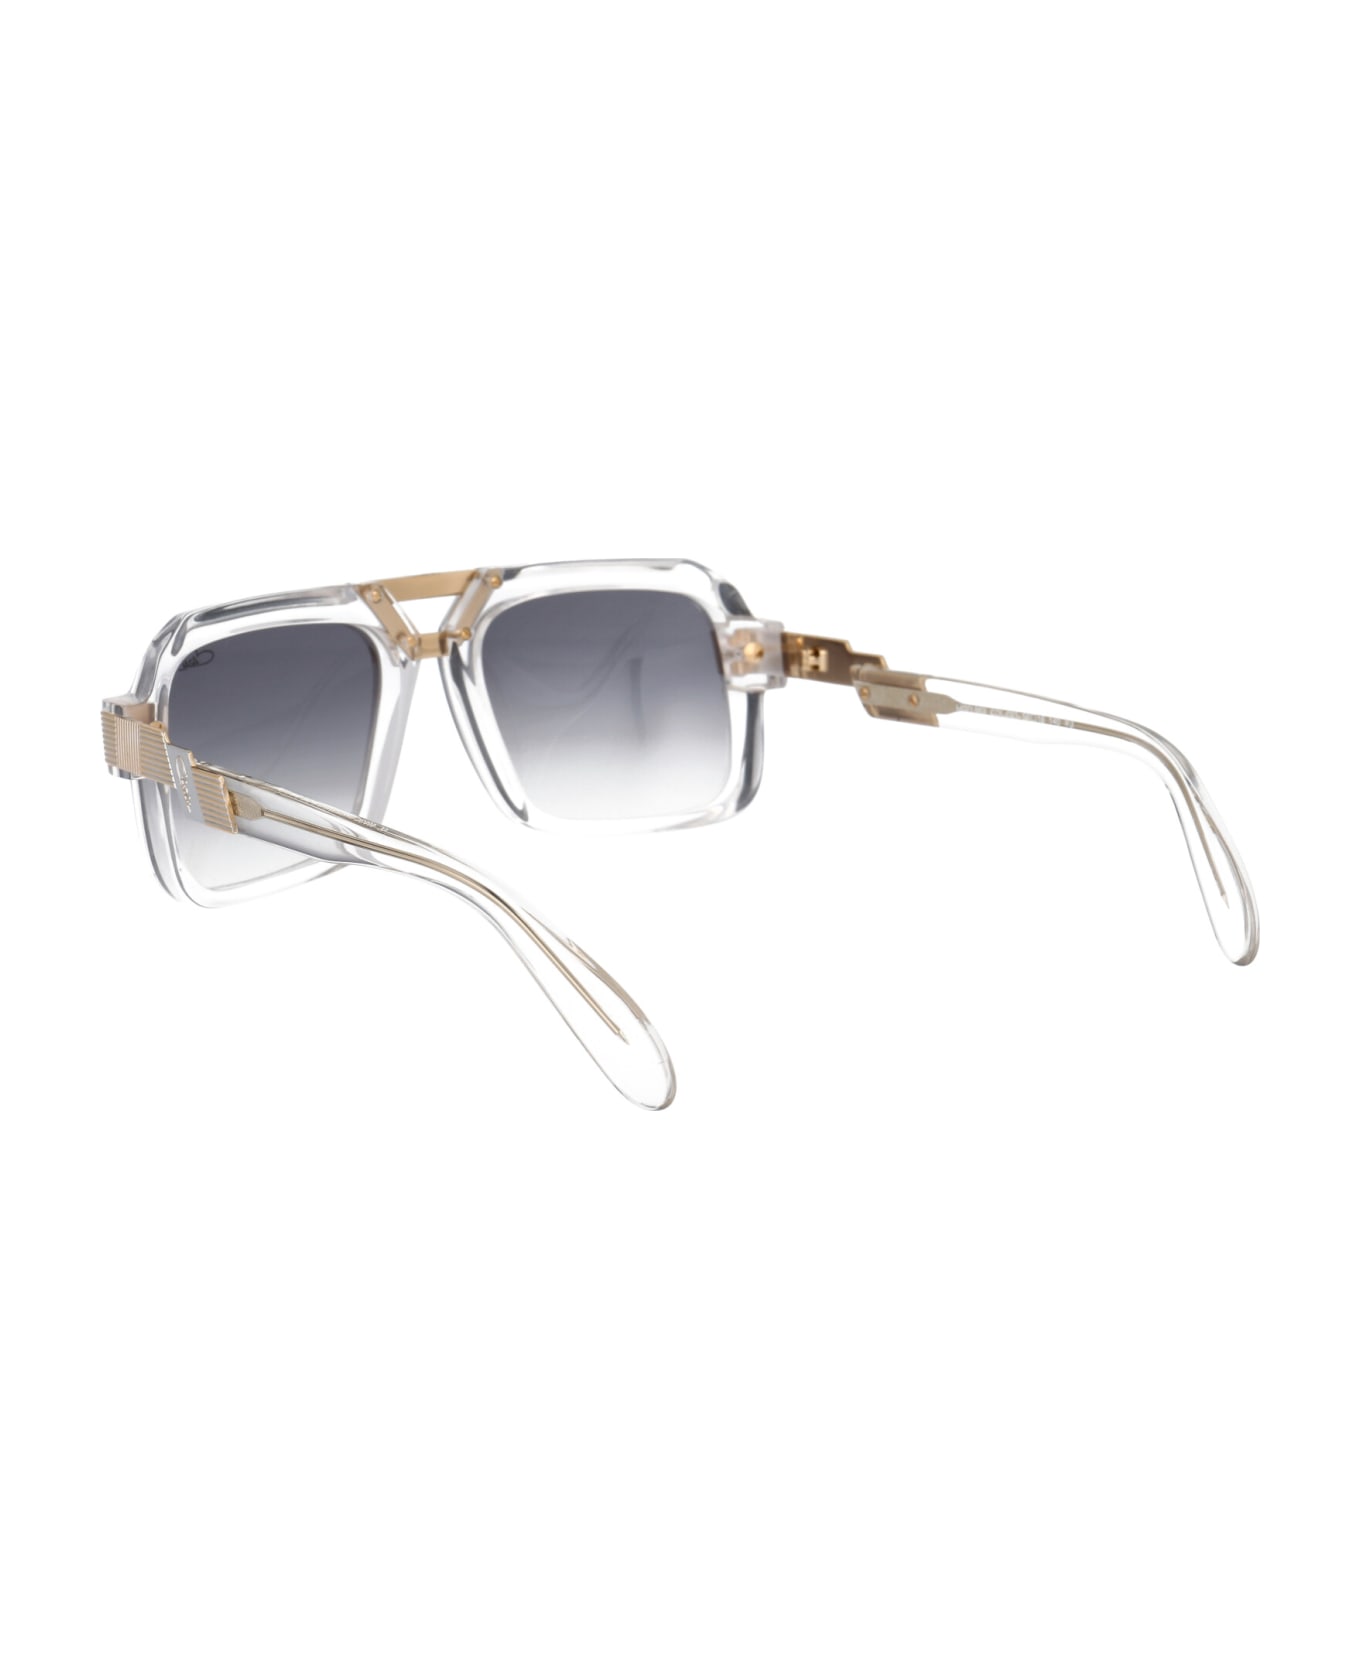 Cazal Mod. 669 Sunglasses - 003 CRYSTAL